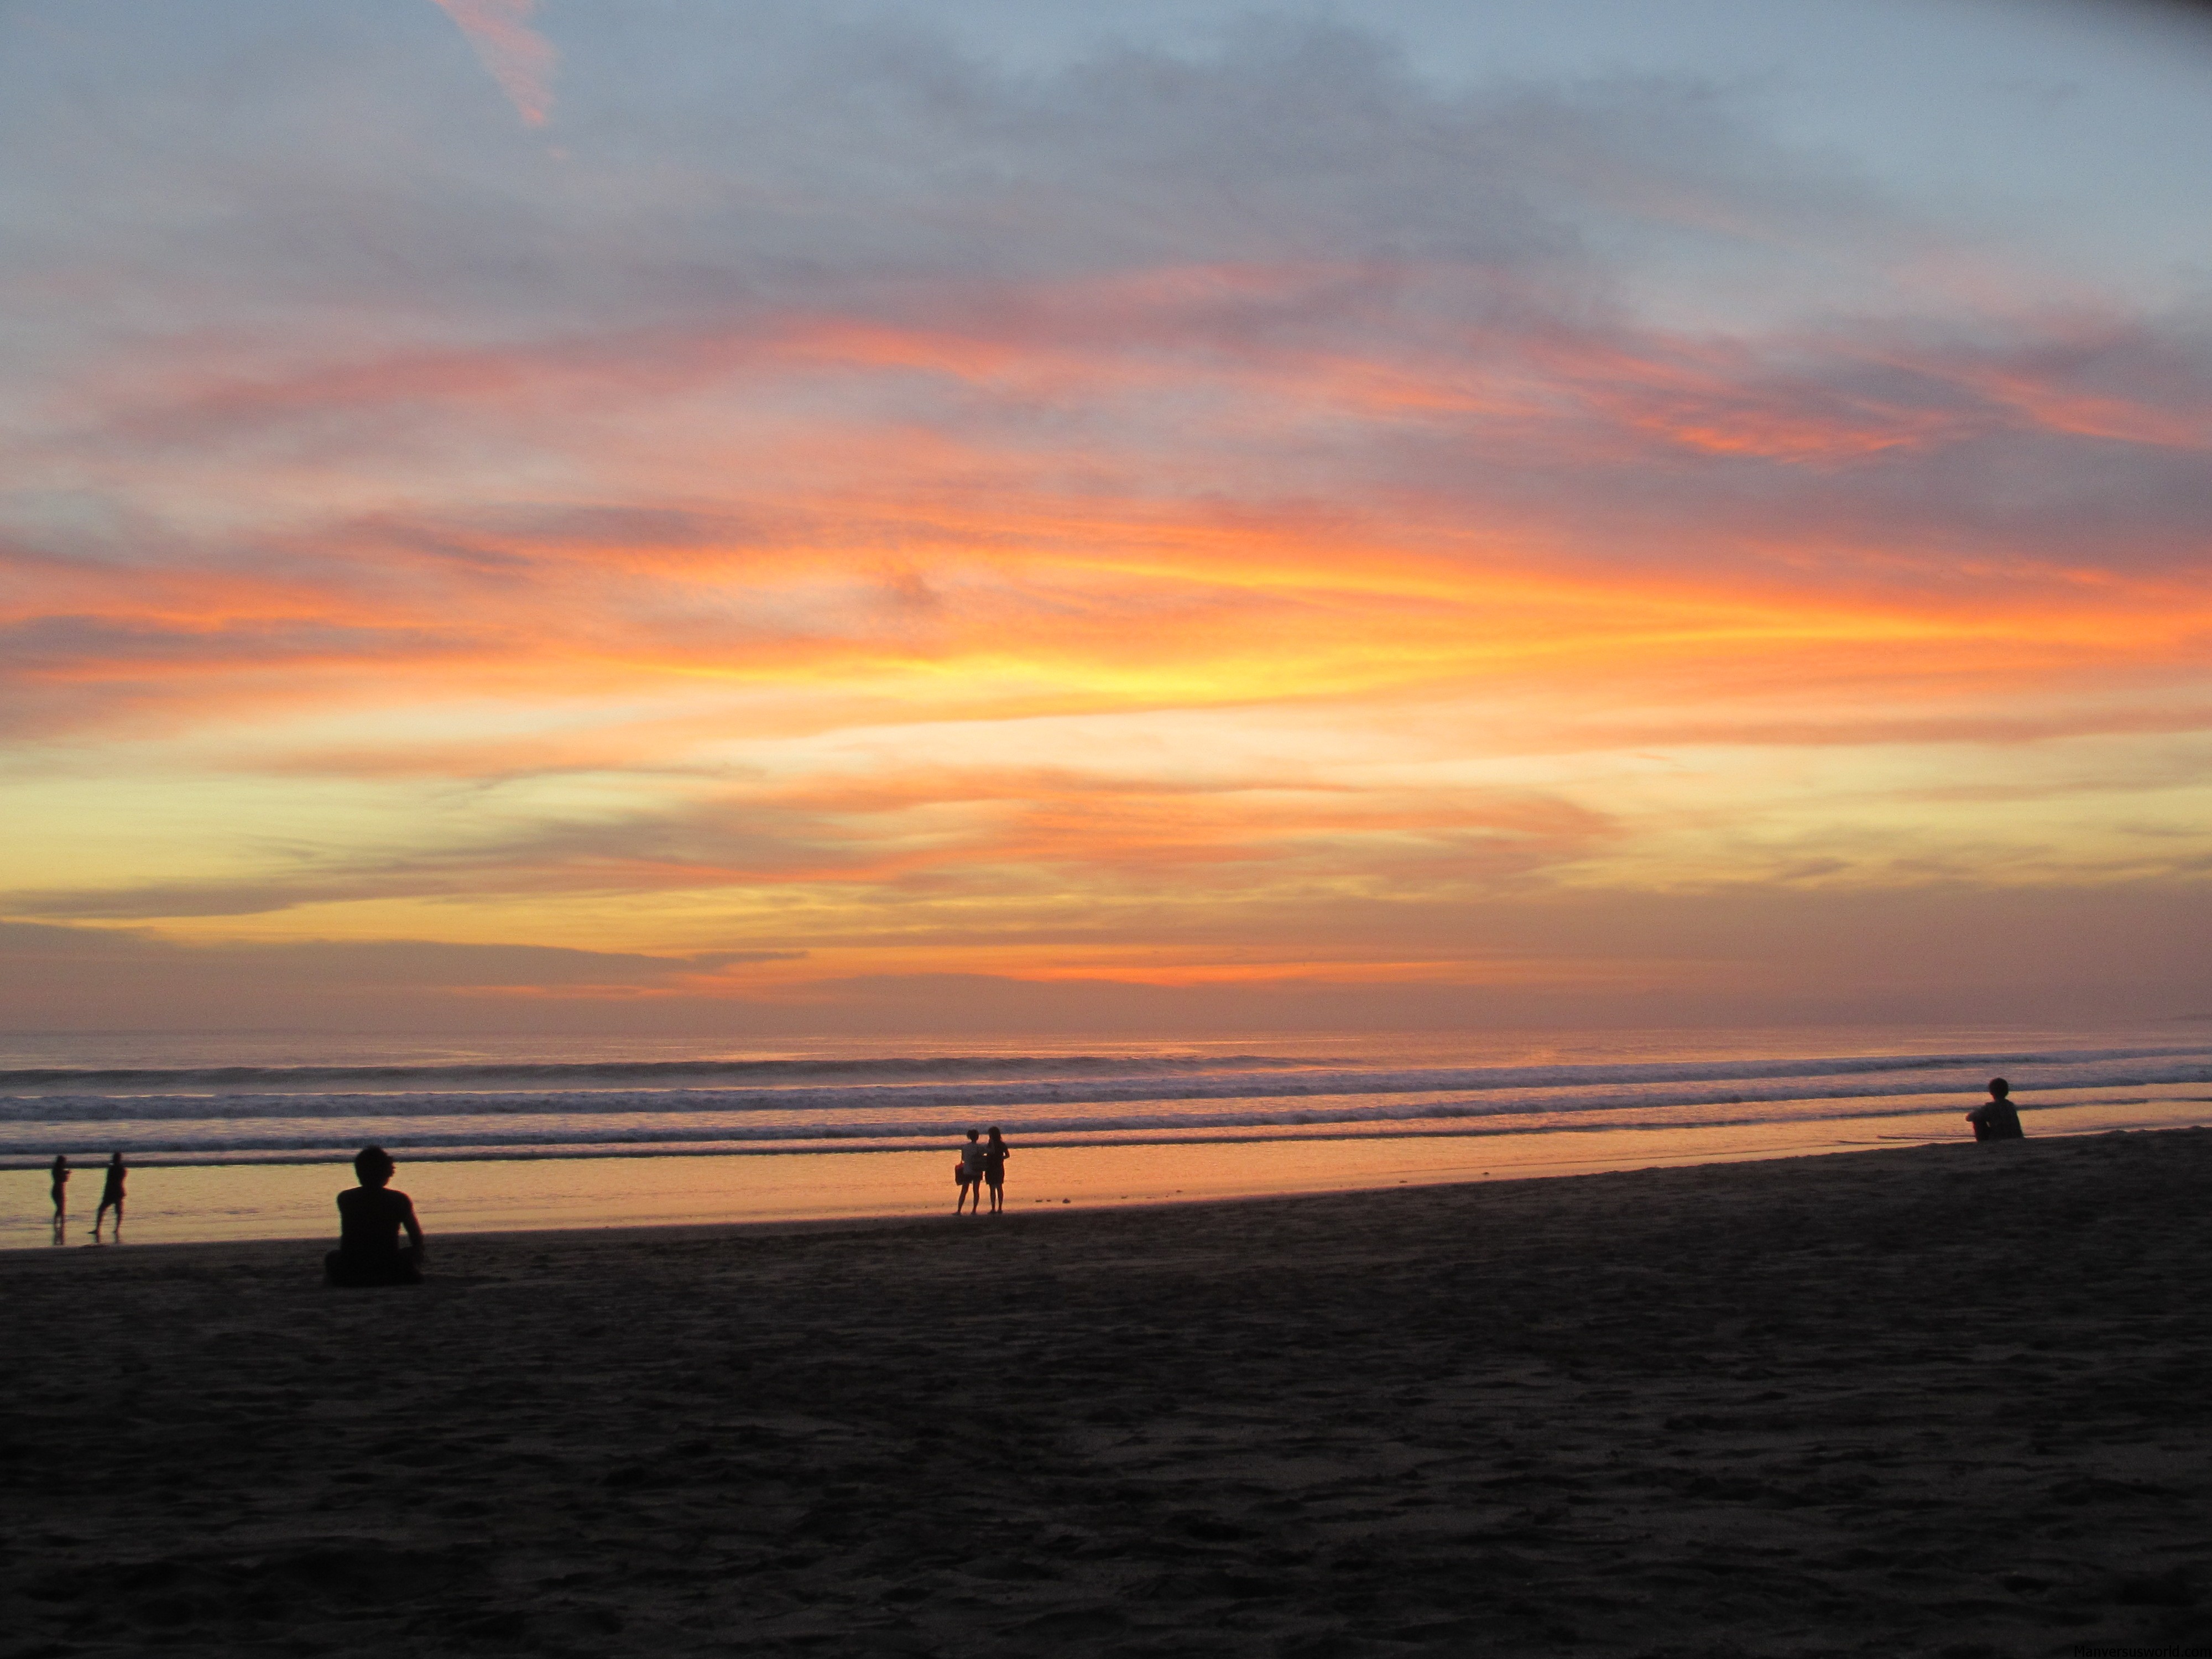 I got engaged iat sunset on Kuta Beach, Bali